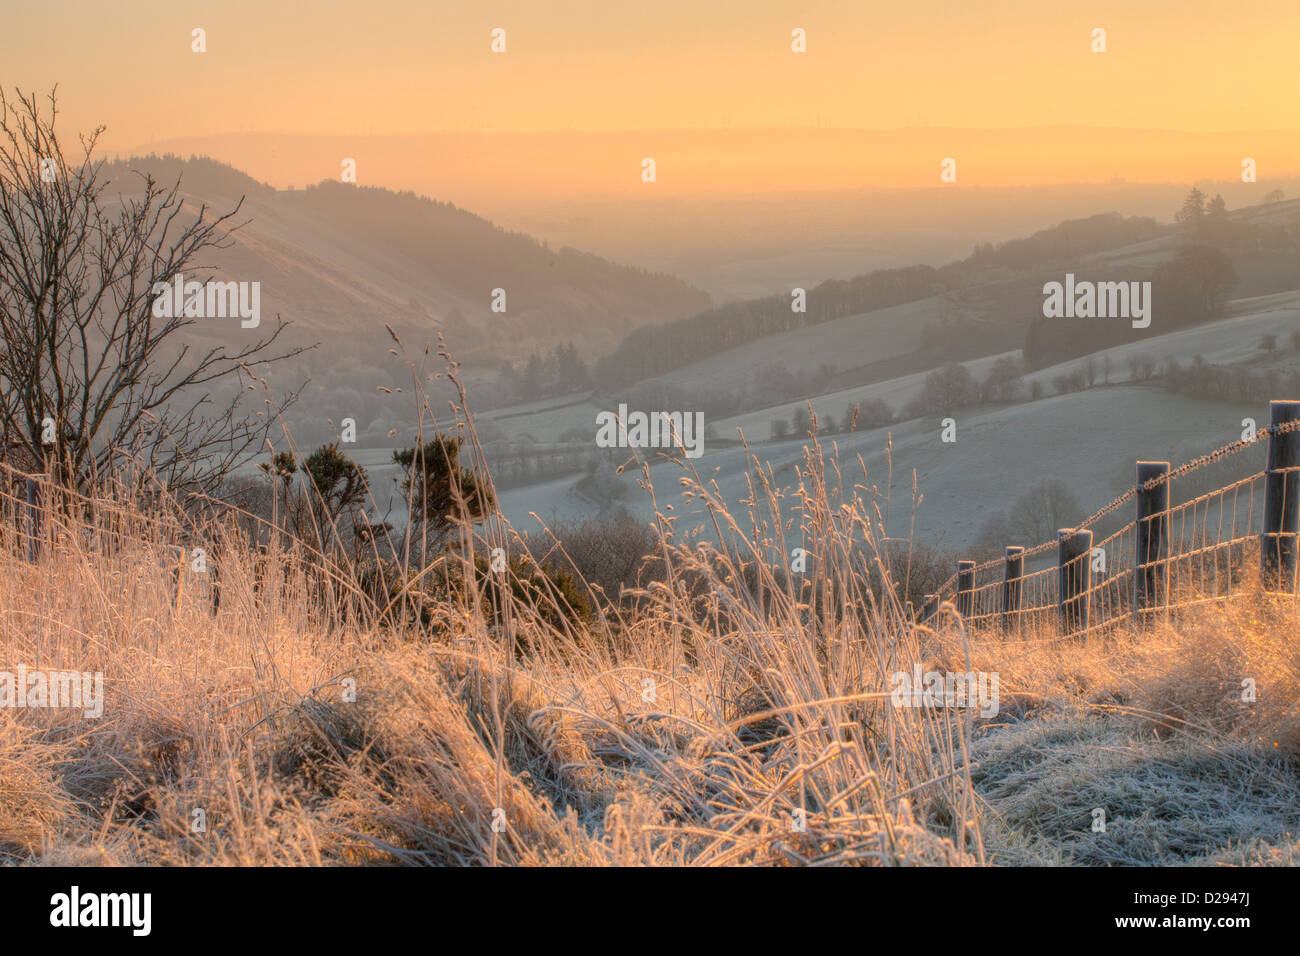 Vue sur vallée avec gel avant l'aube, le soleil se lever sur le far hills. La Severn (vallée de Hafren). Près de Llanidloes, Powys. Pays de Galles Banque D'Images